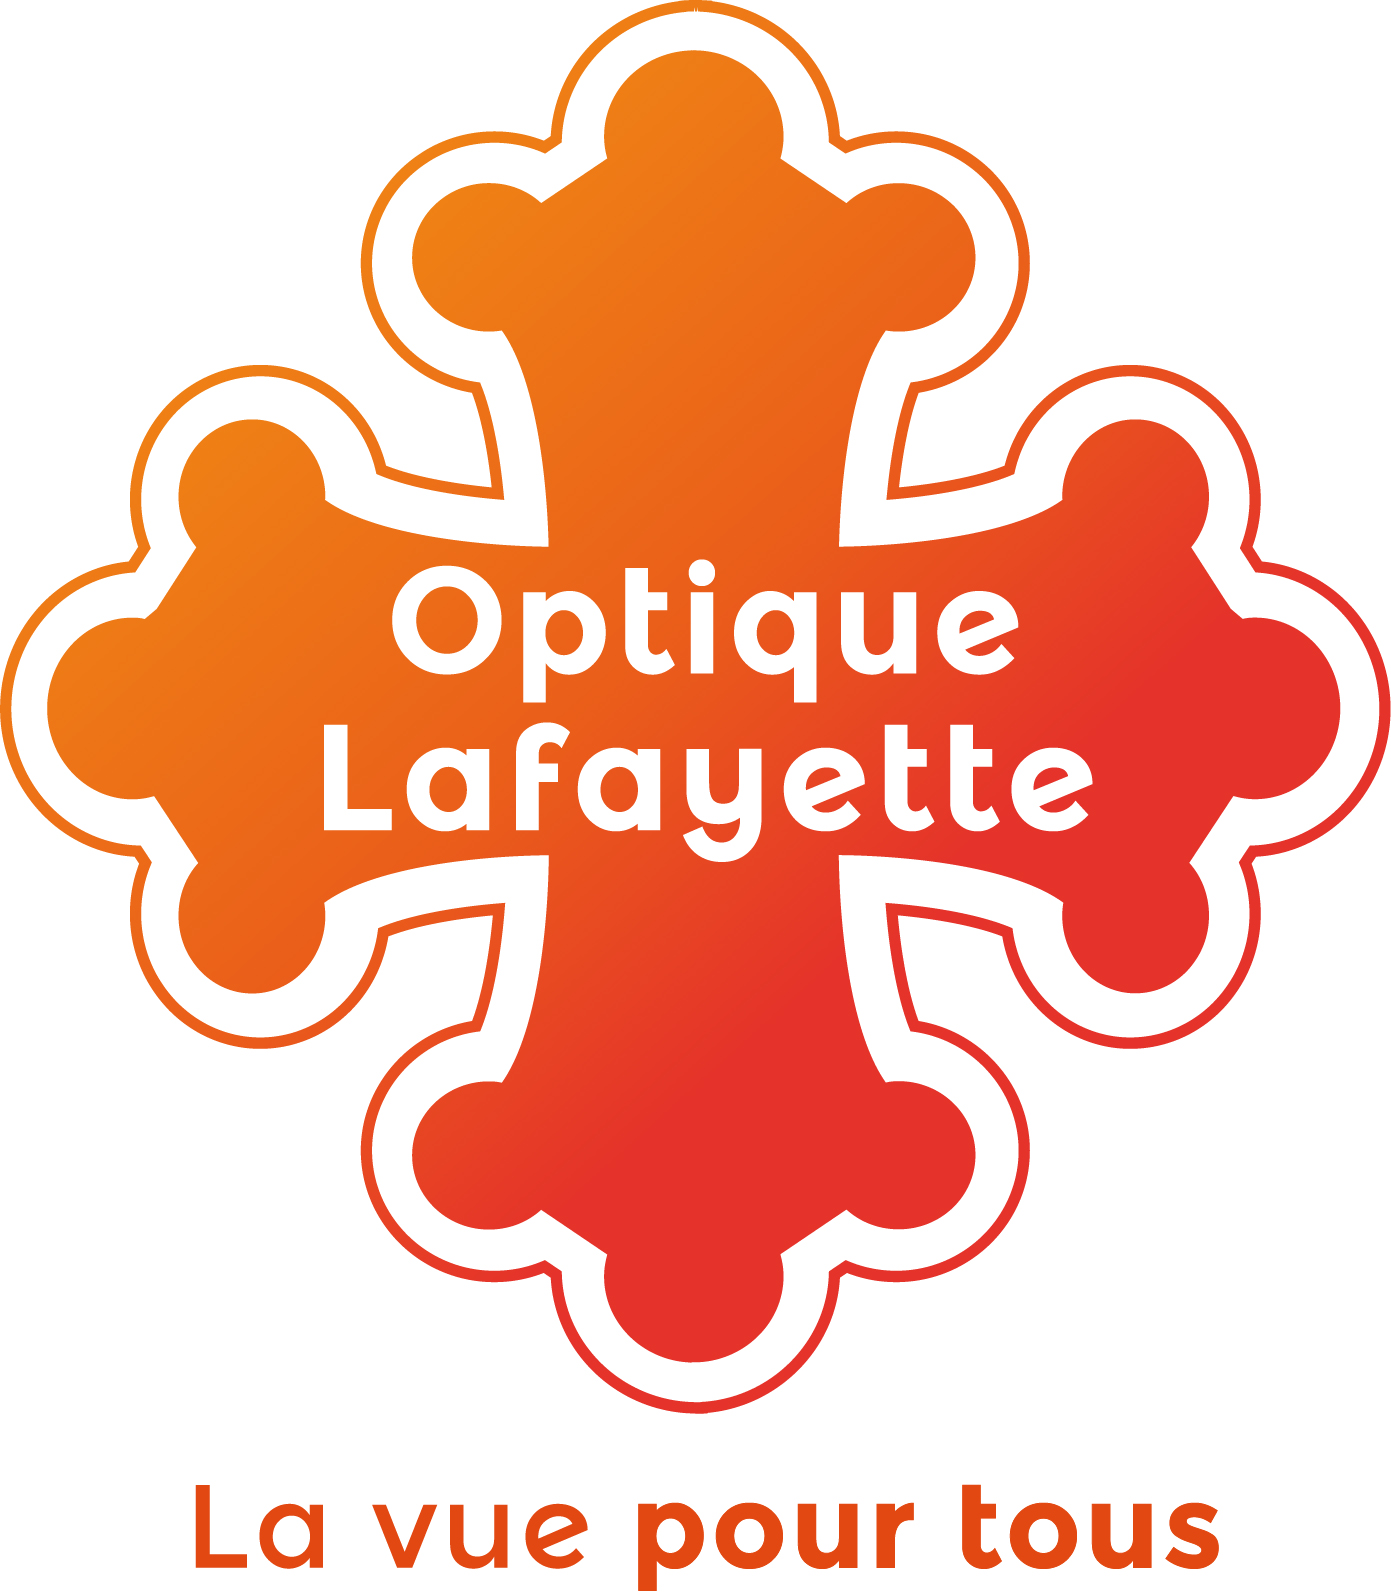 Optique Lafayette Auch